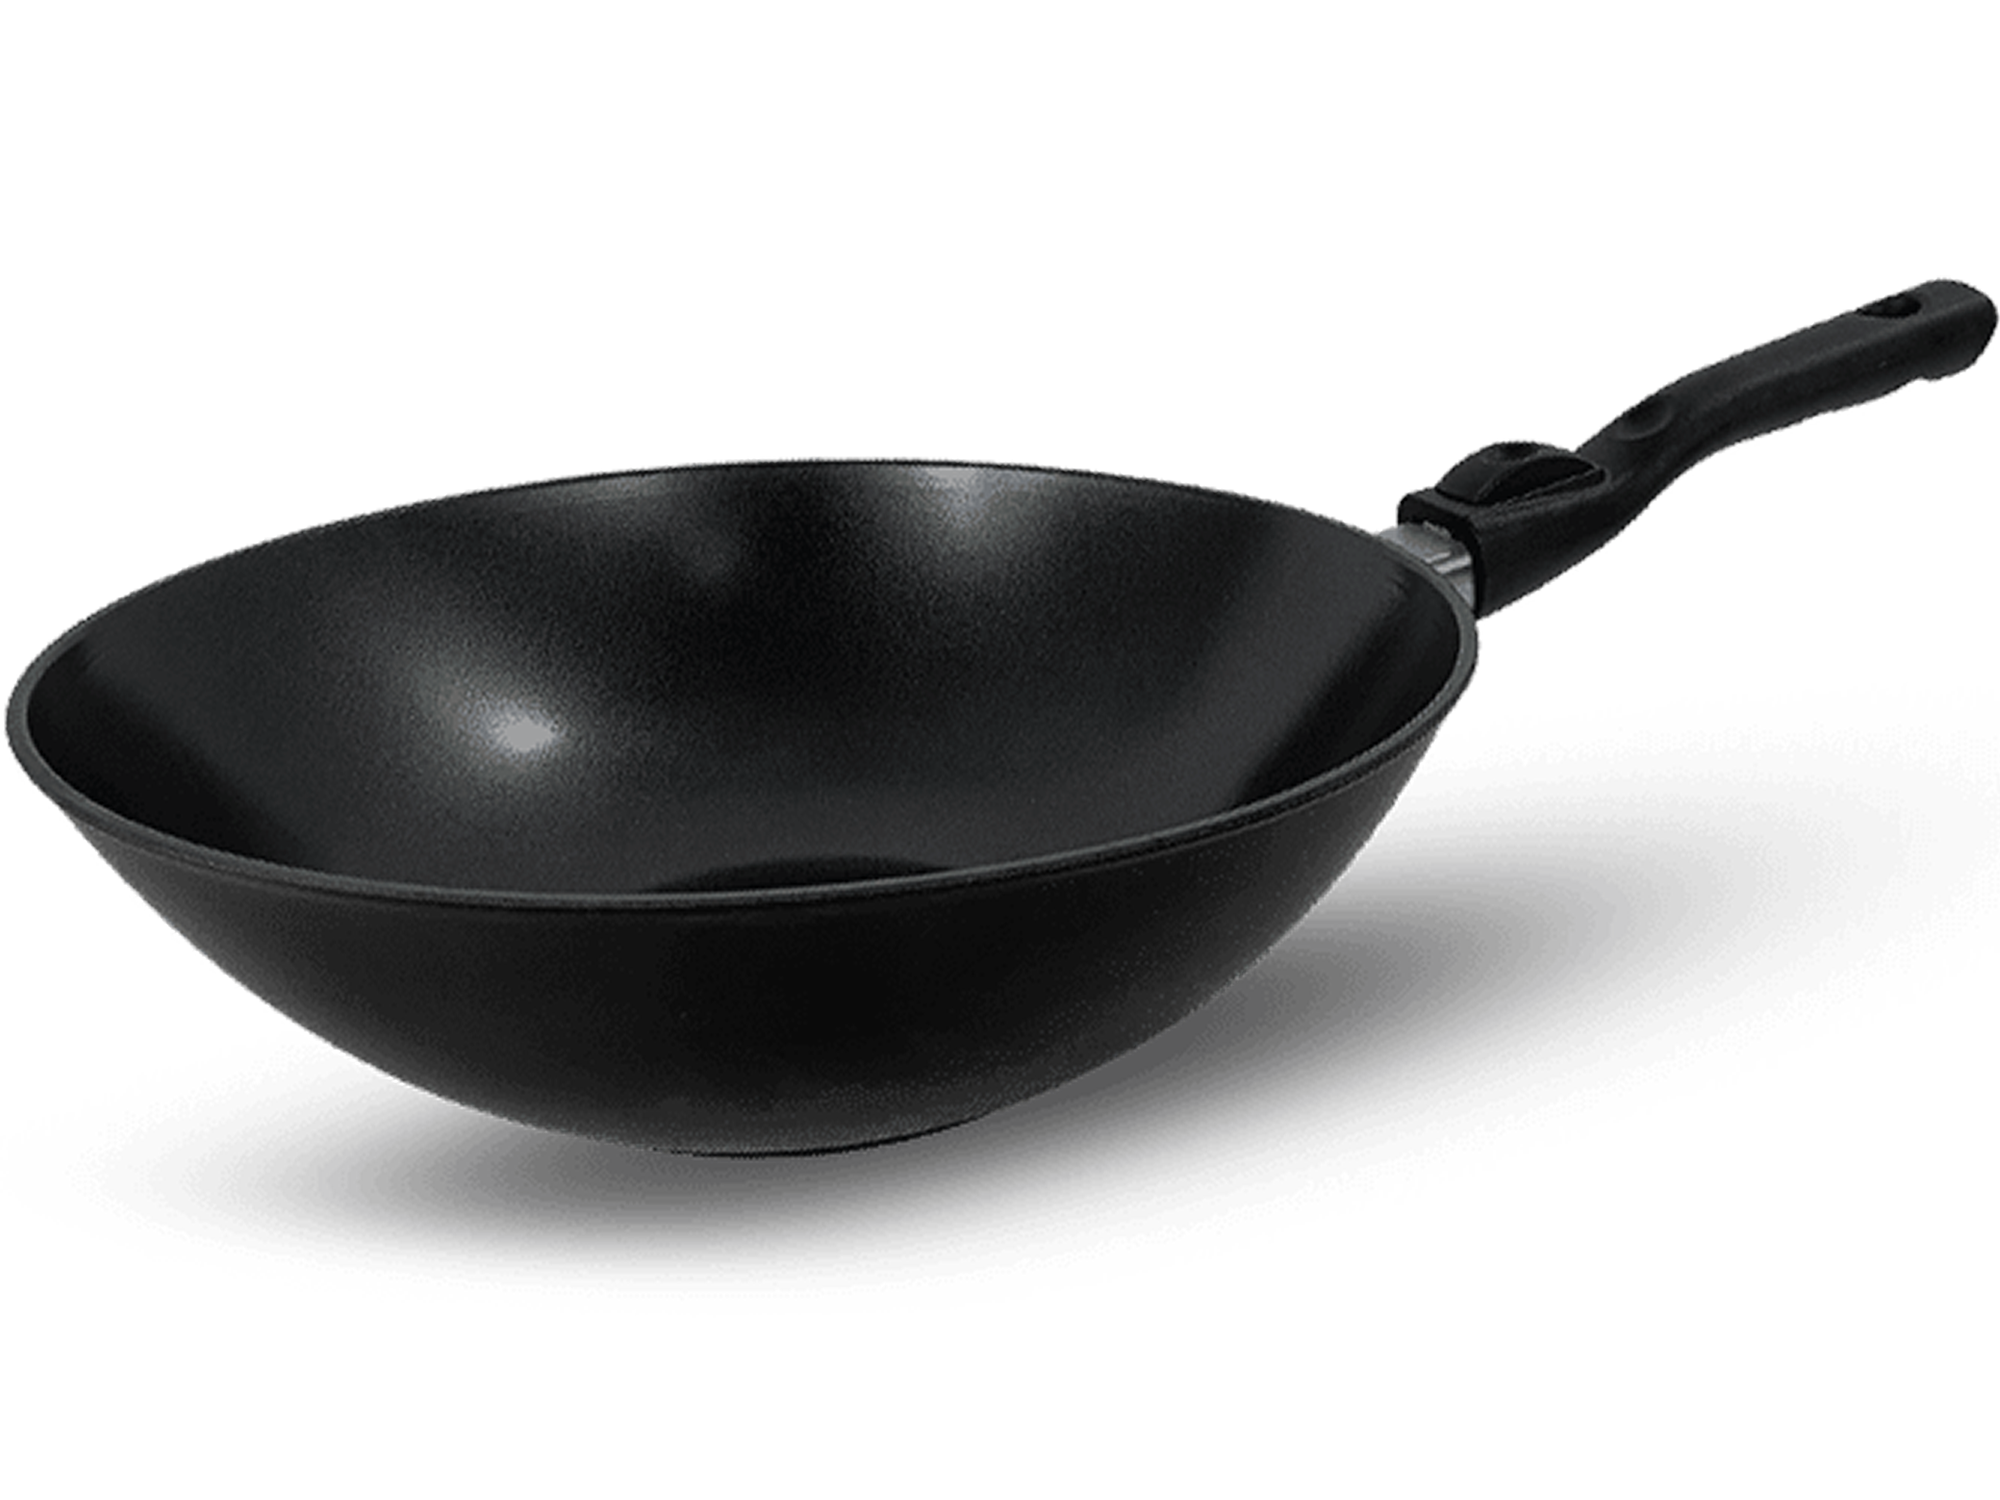 profi pfannen,hochwertige pfannen, wokpfanne kitchenline black 3 uai